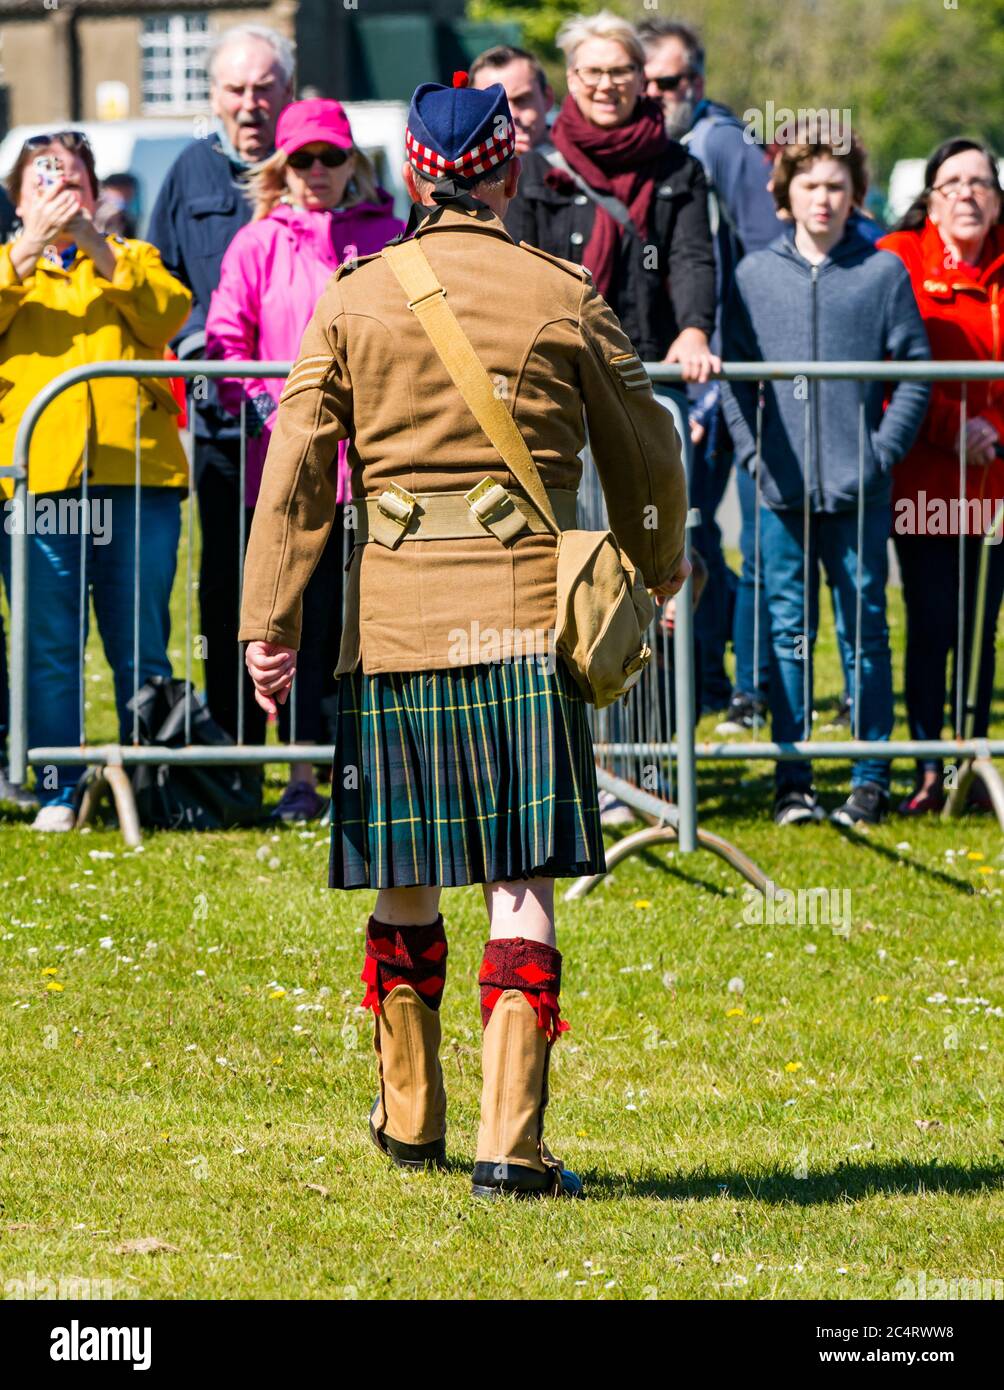 Schottischer Soldat im Kilt bei Kriegserfahrung Veranstaltung, die eine Menge unterhielt, East Fortune, East Lothian, Schottland, Großbritannien Stockfoto